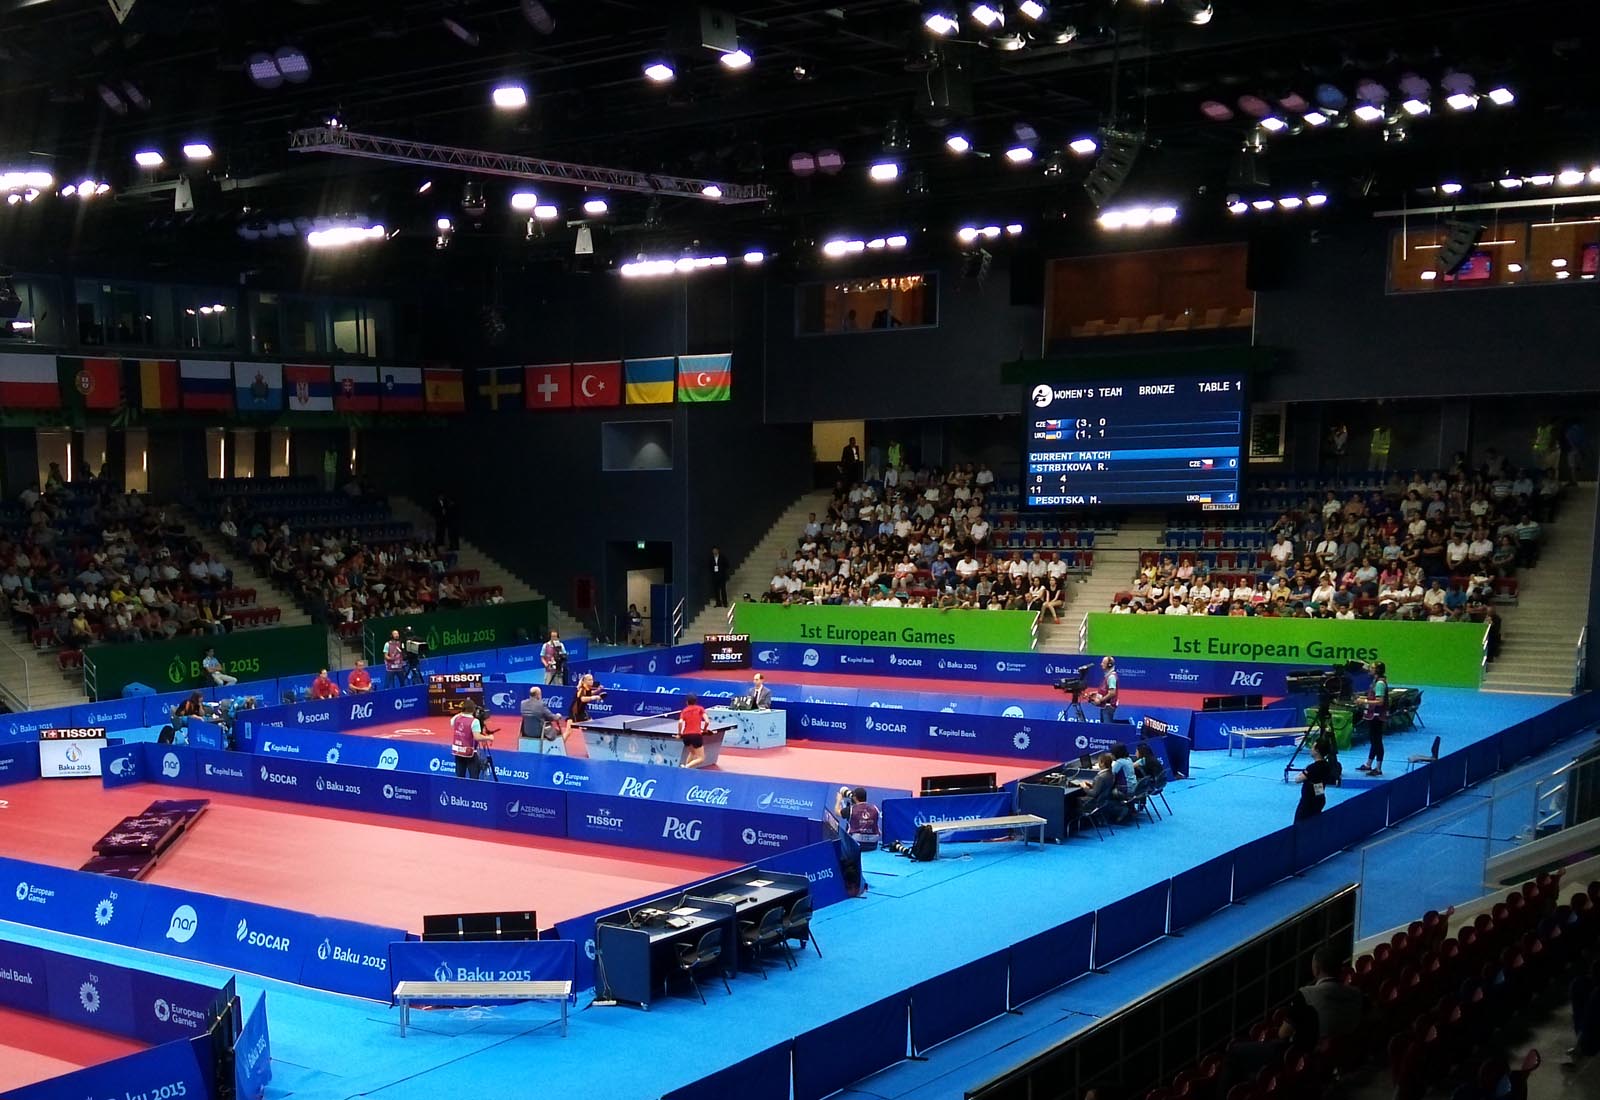 Baku sport hall - First European Games Baku 2015